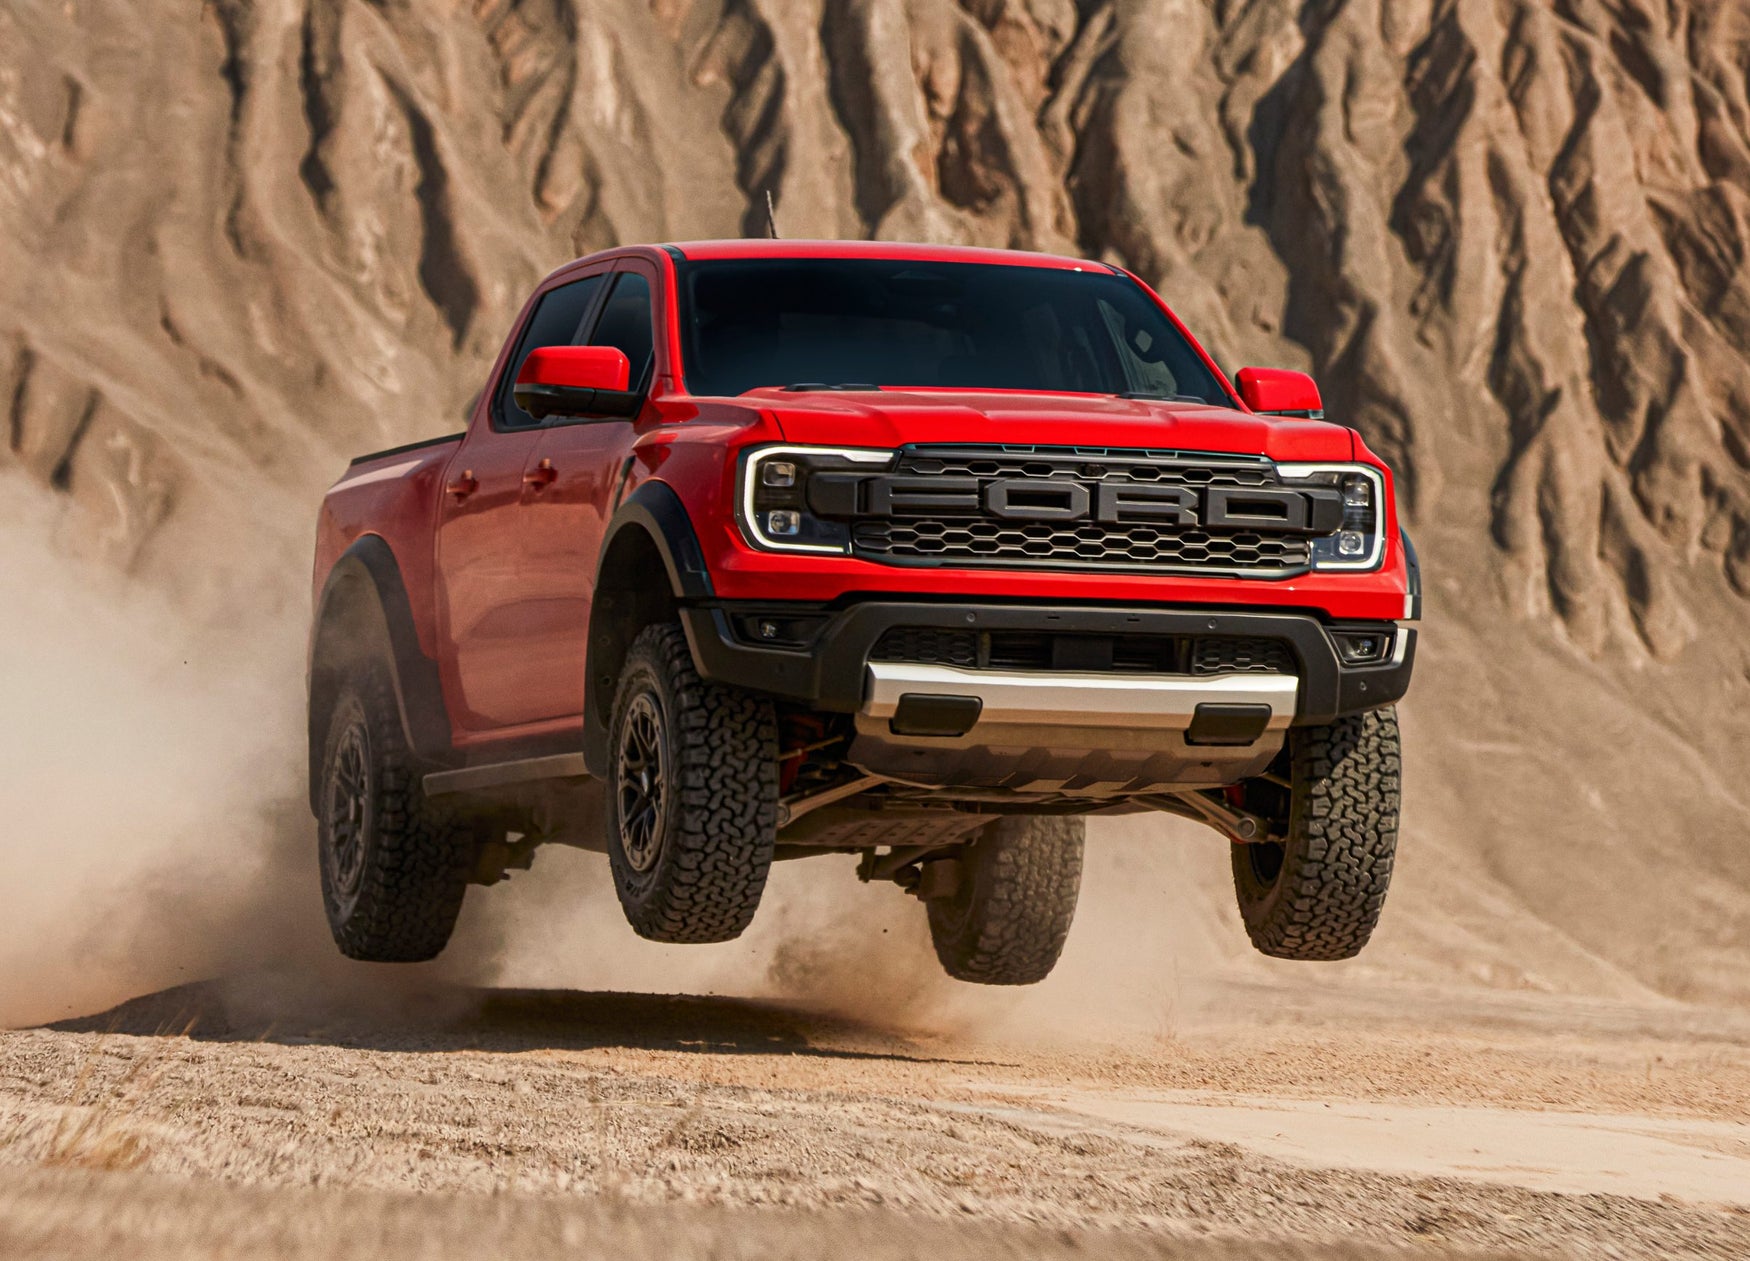 Red Ford Ranger Raptor jumping in the desert